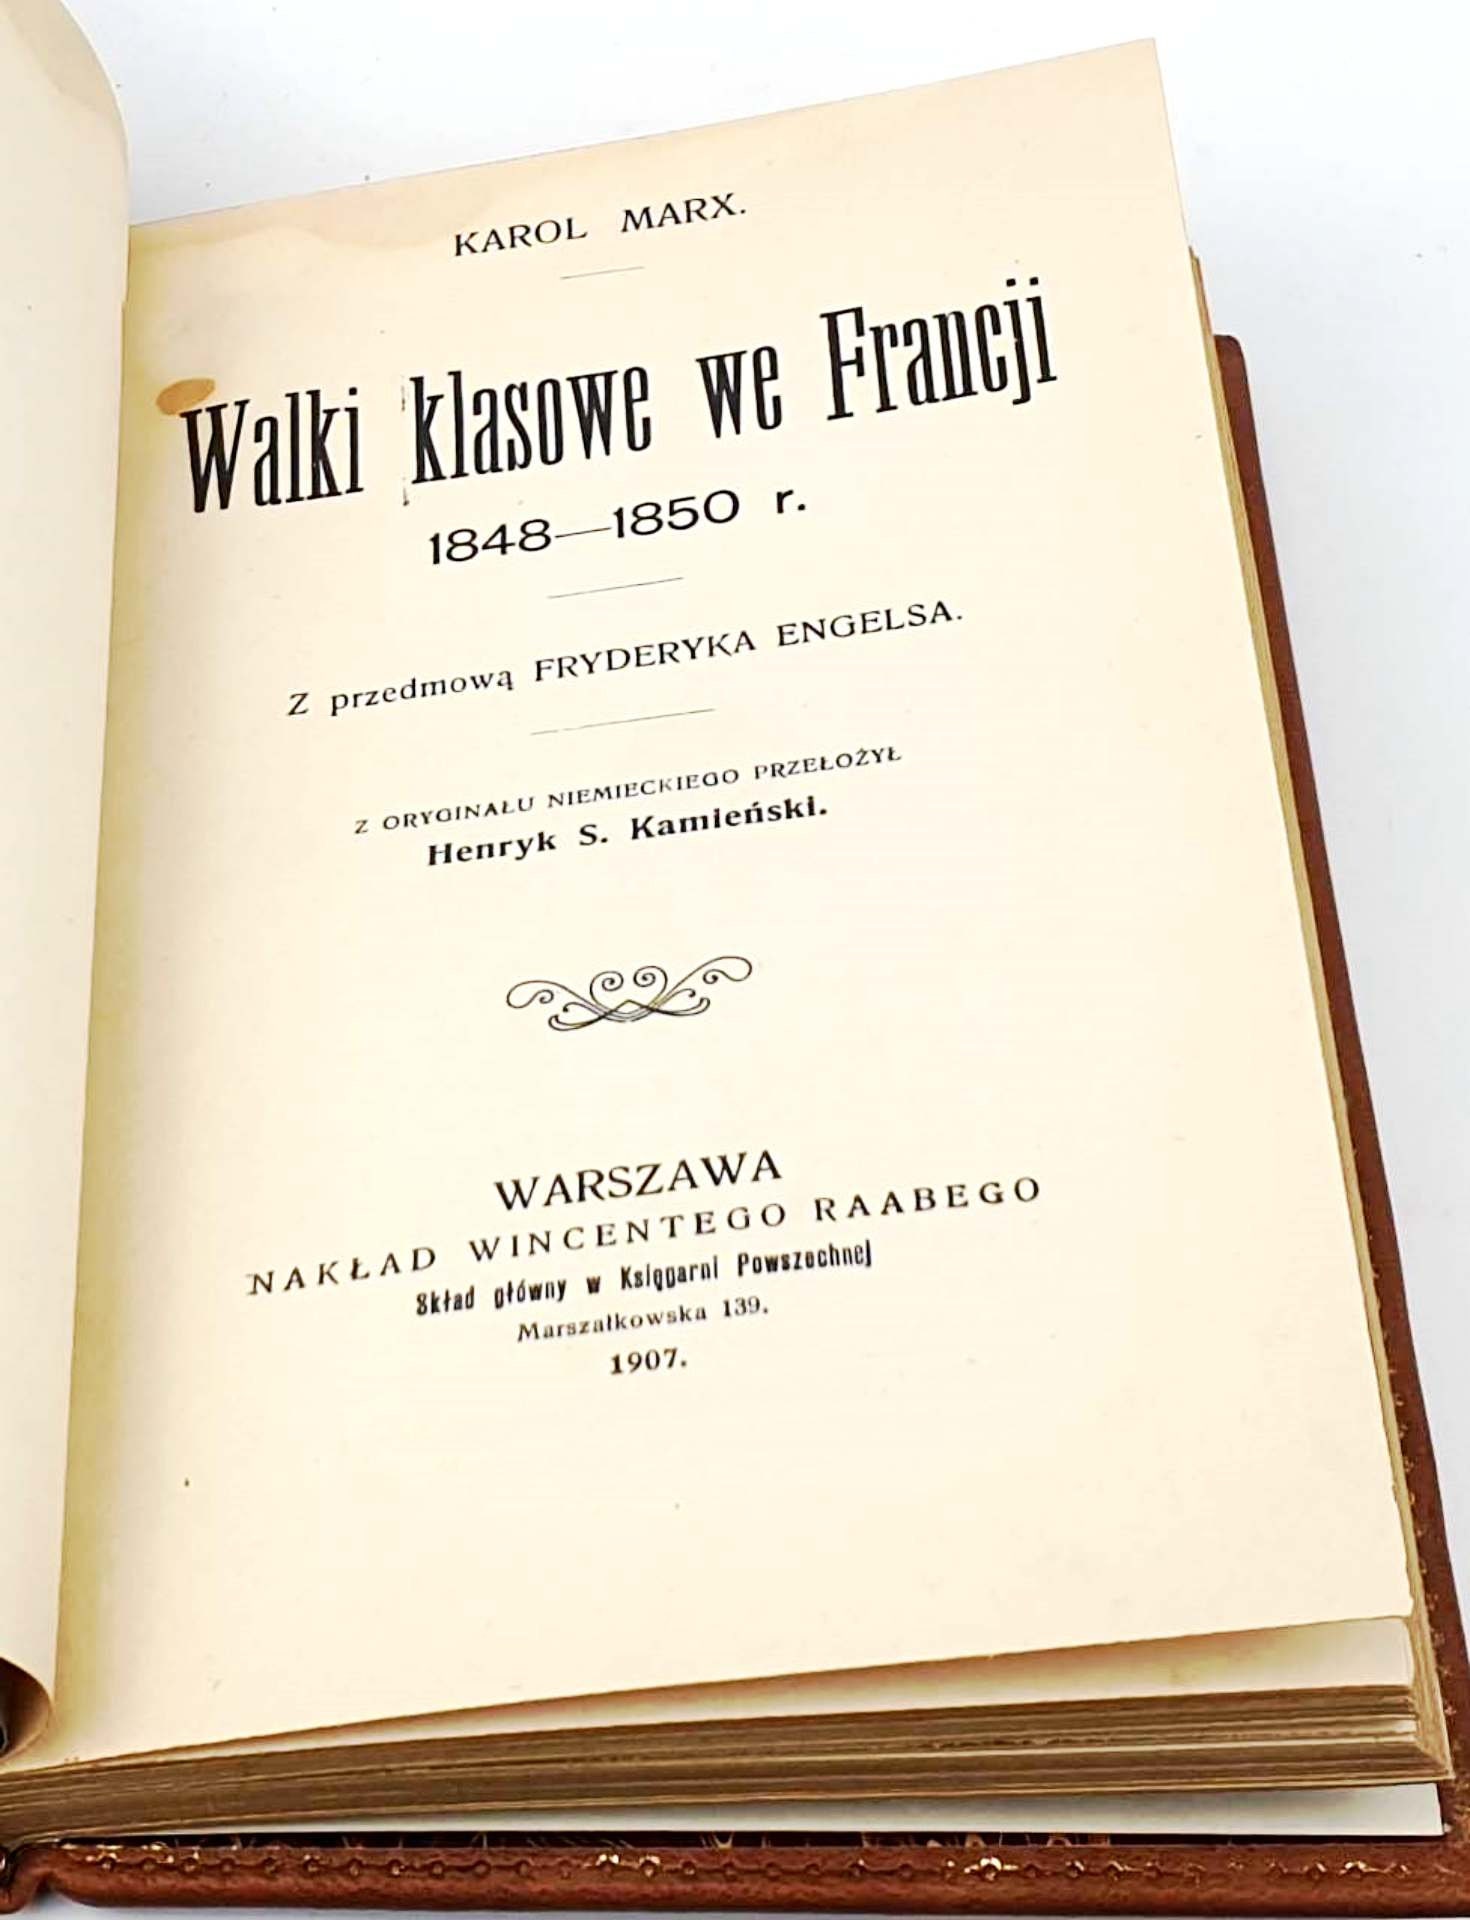 Wislawa Szymborska Ludzie Na Moście. People on the Bridge First Edition 